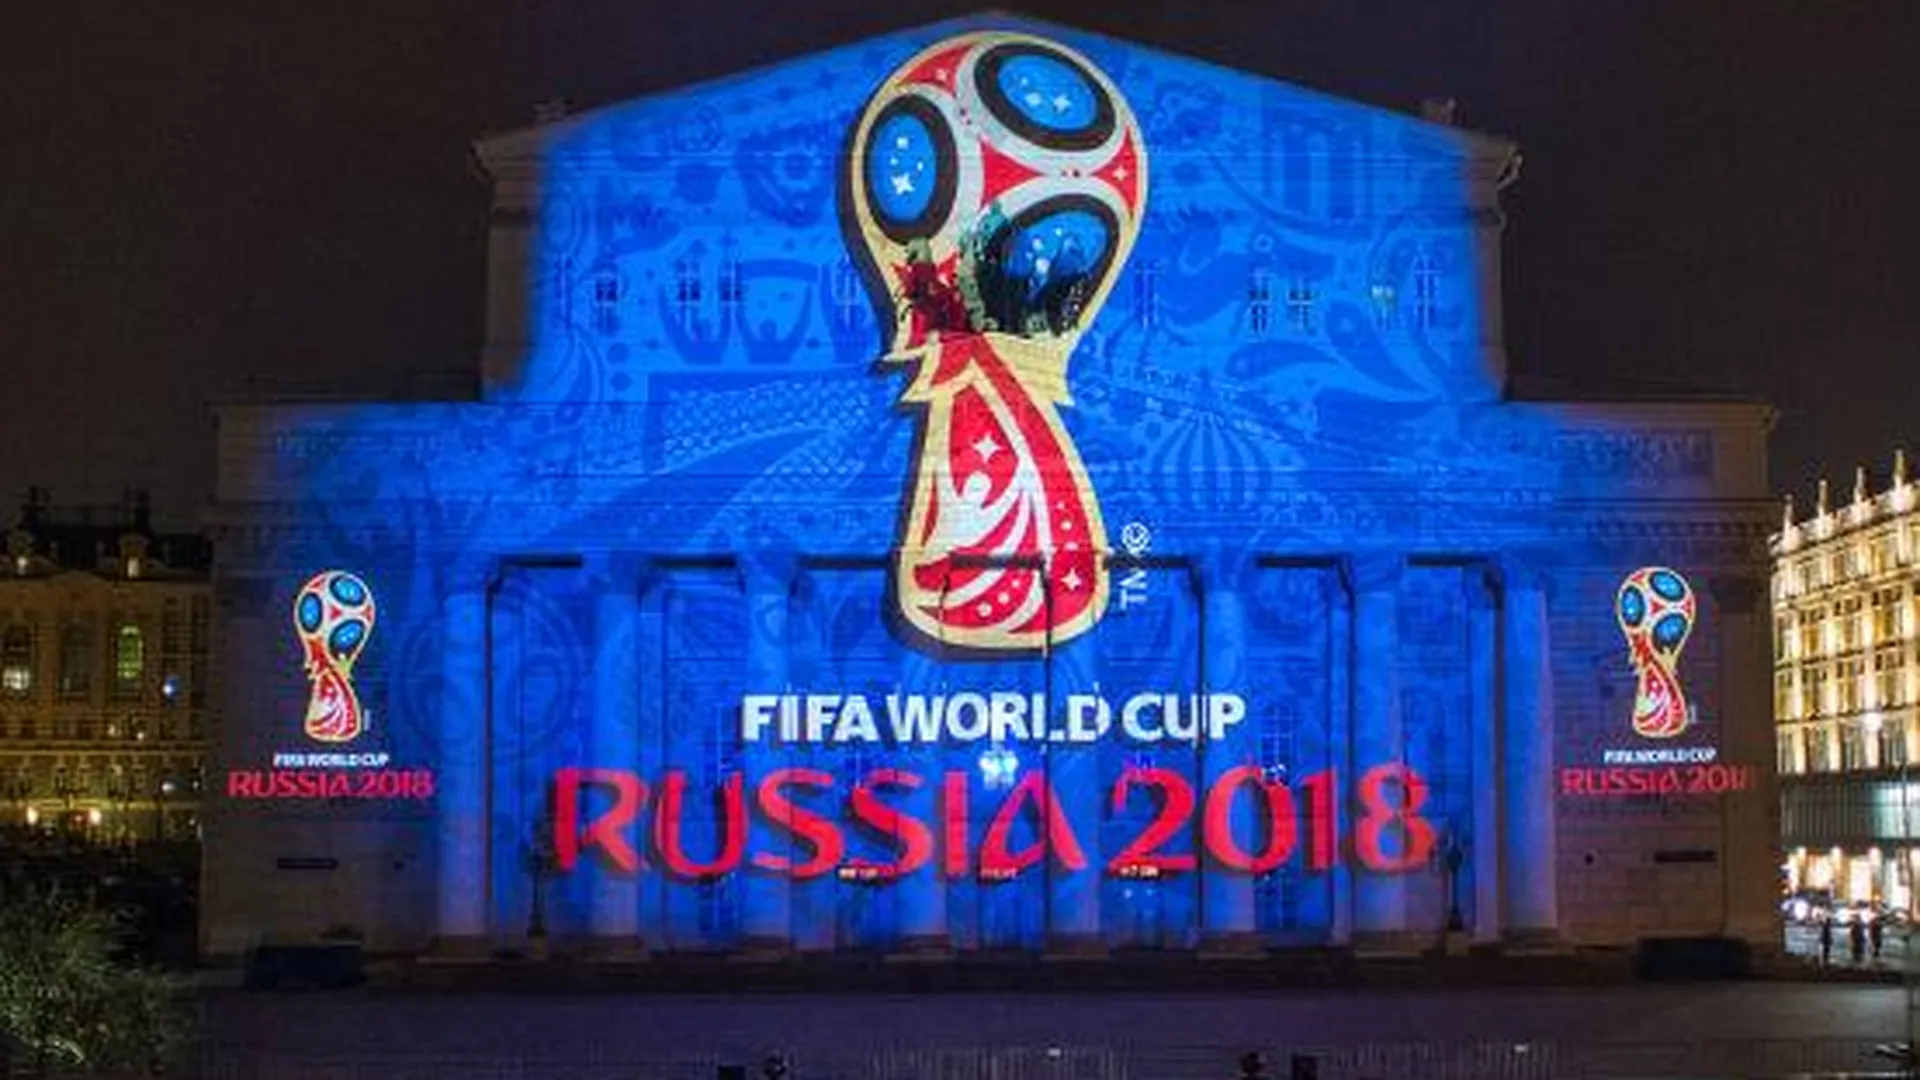 ФИФА хочет изъять из продажи футболки с картой России без Крыма 